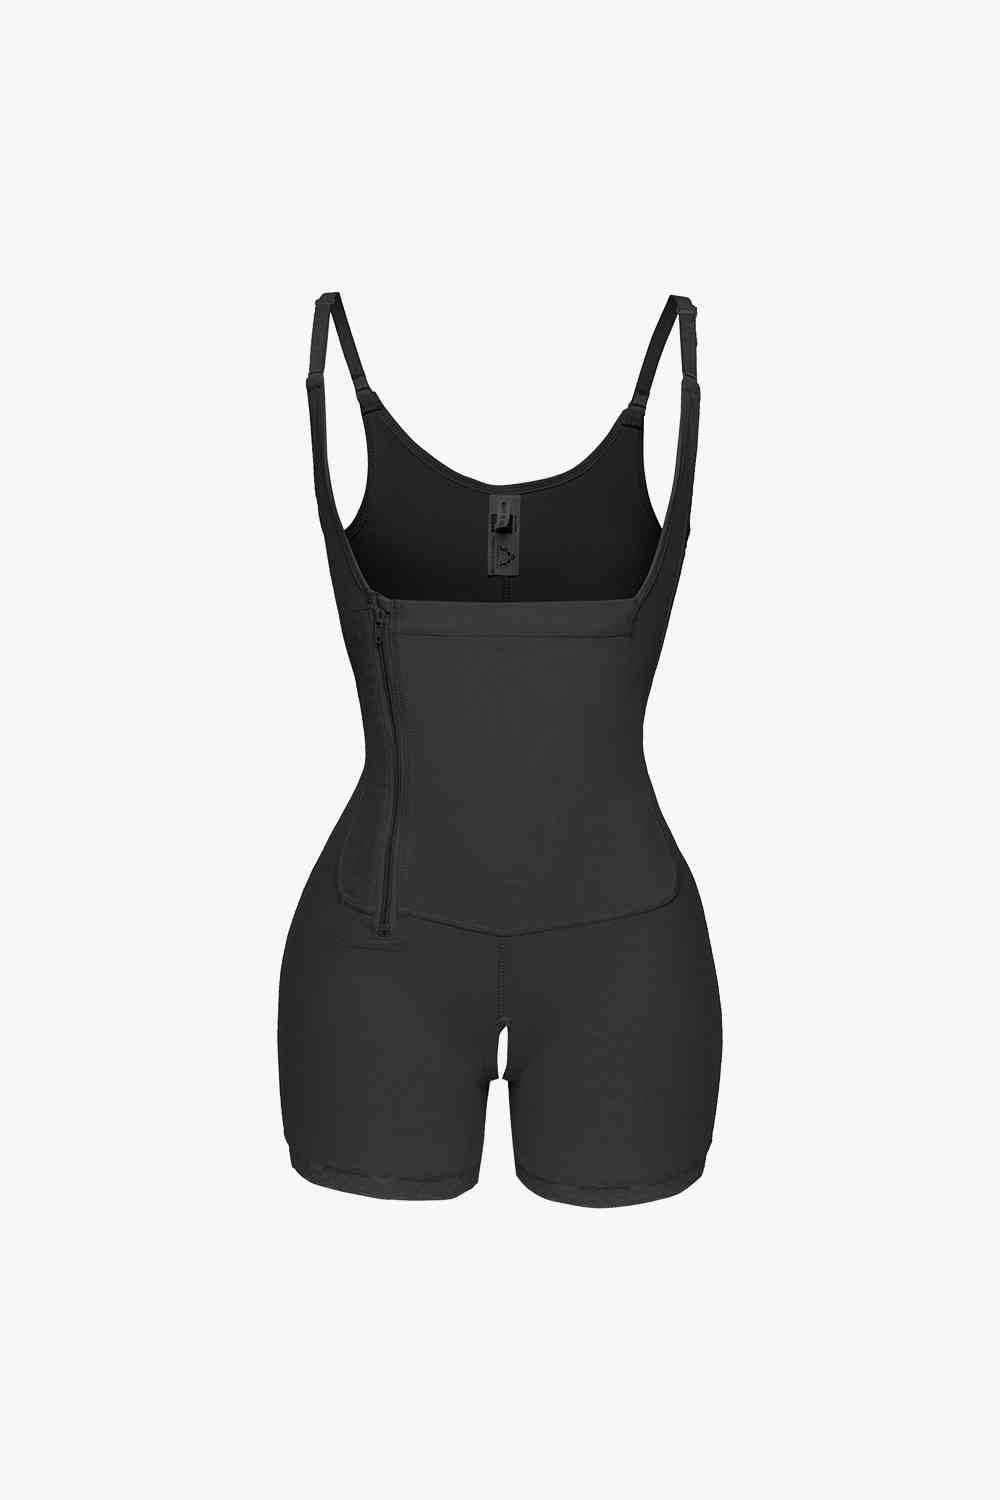 Full Size Side Zipper Under-Bust Shaping Bodysuit  Sunset and Swim Black S 